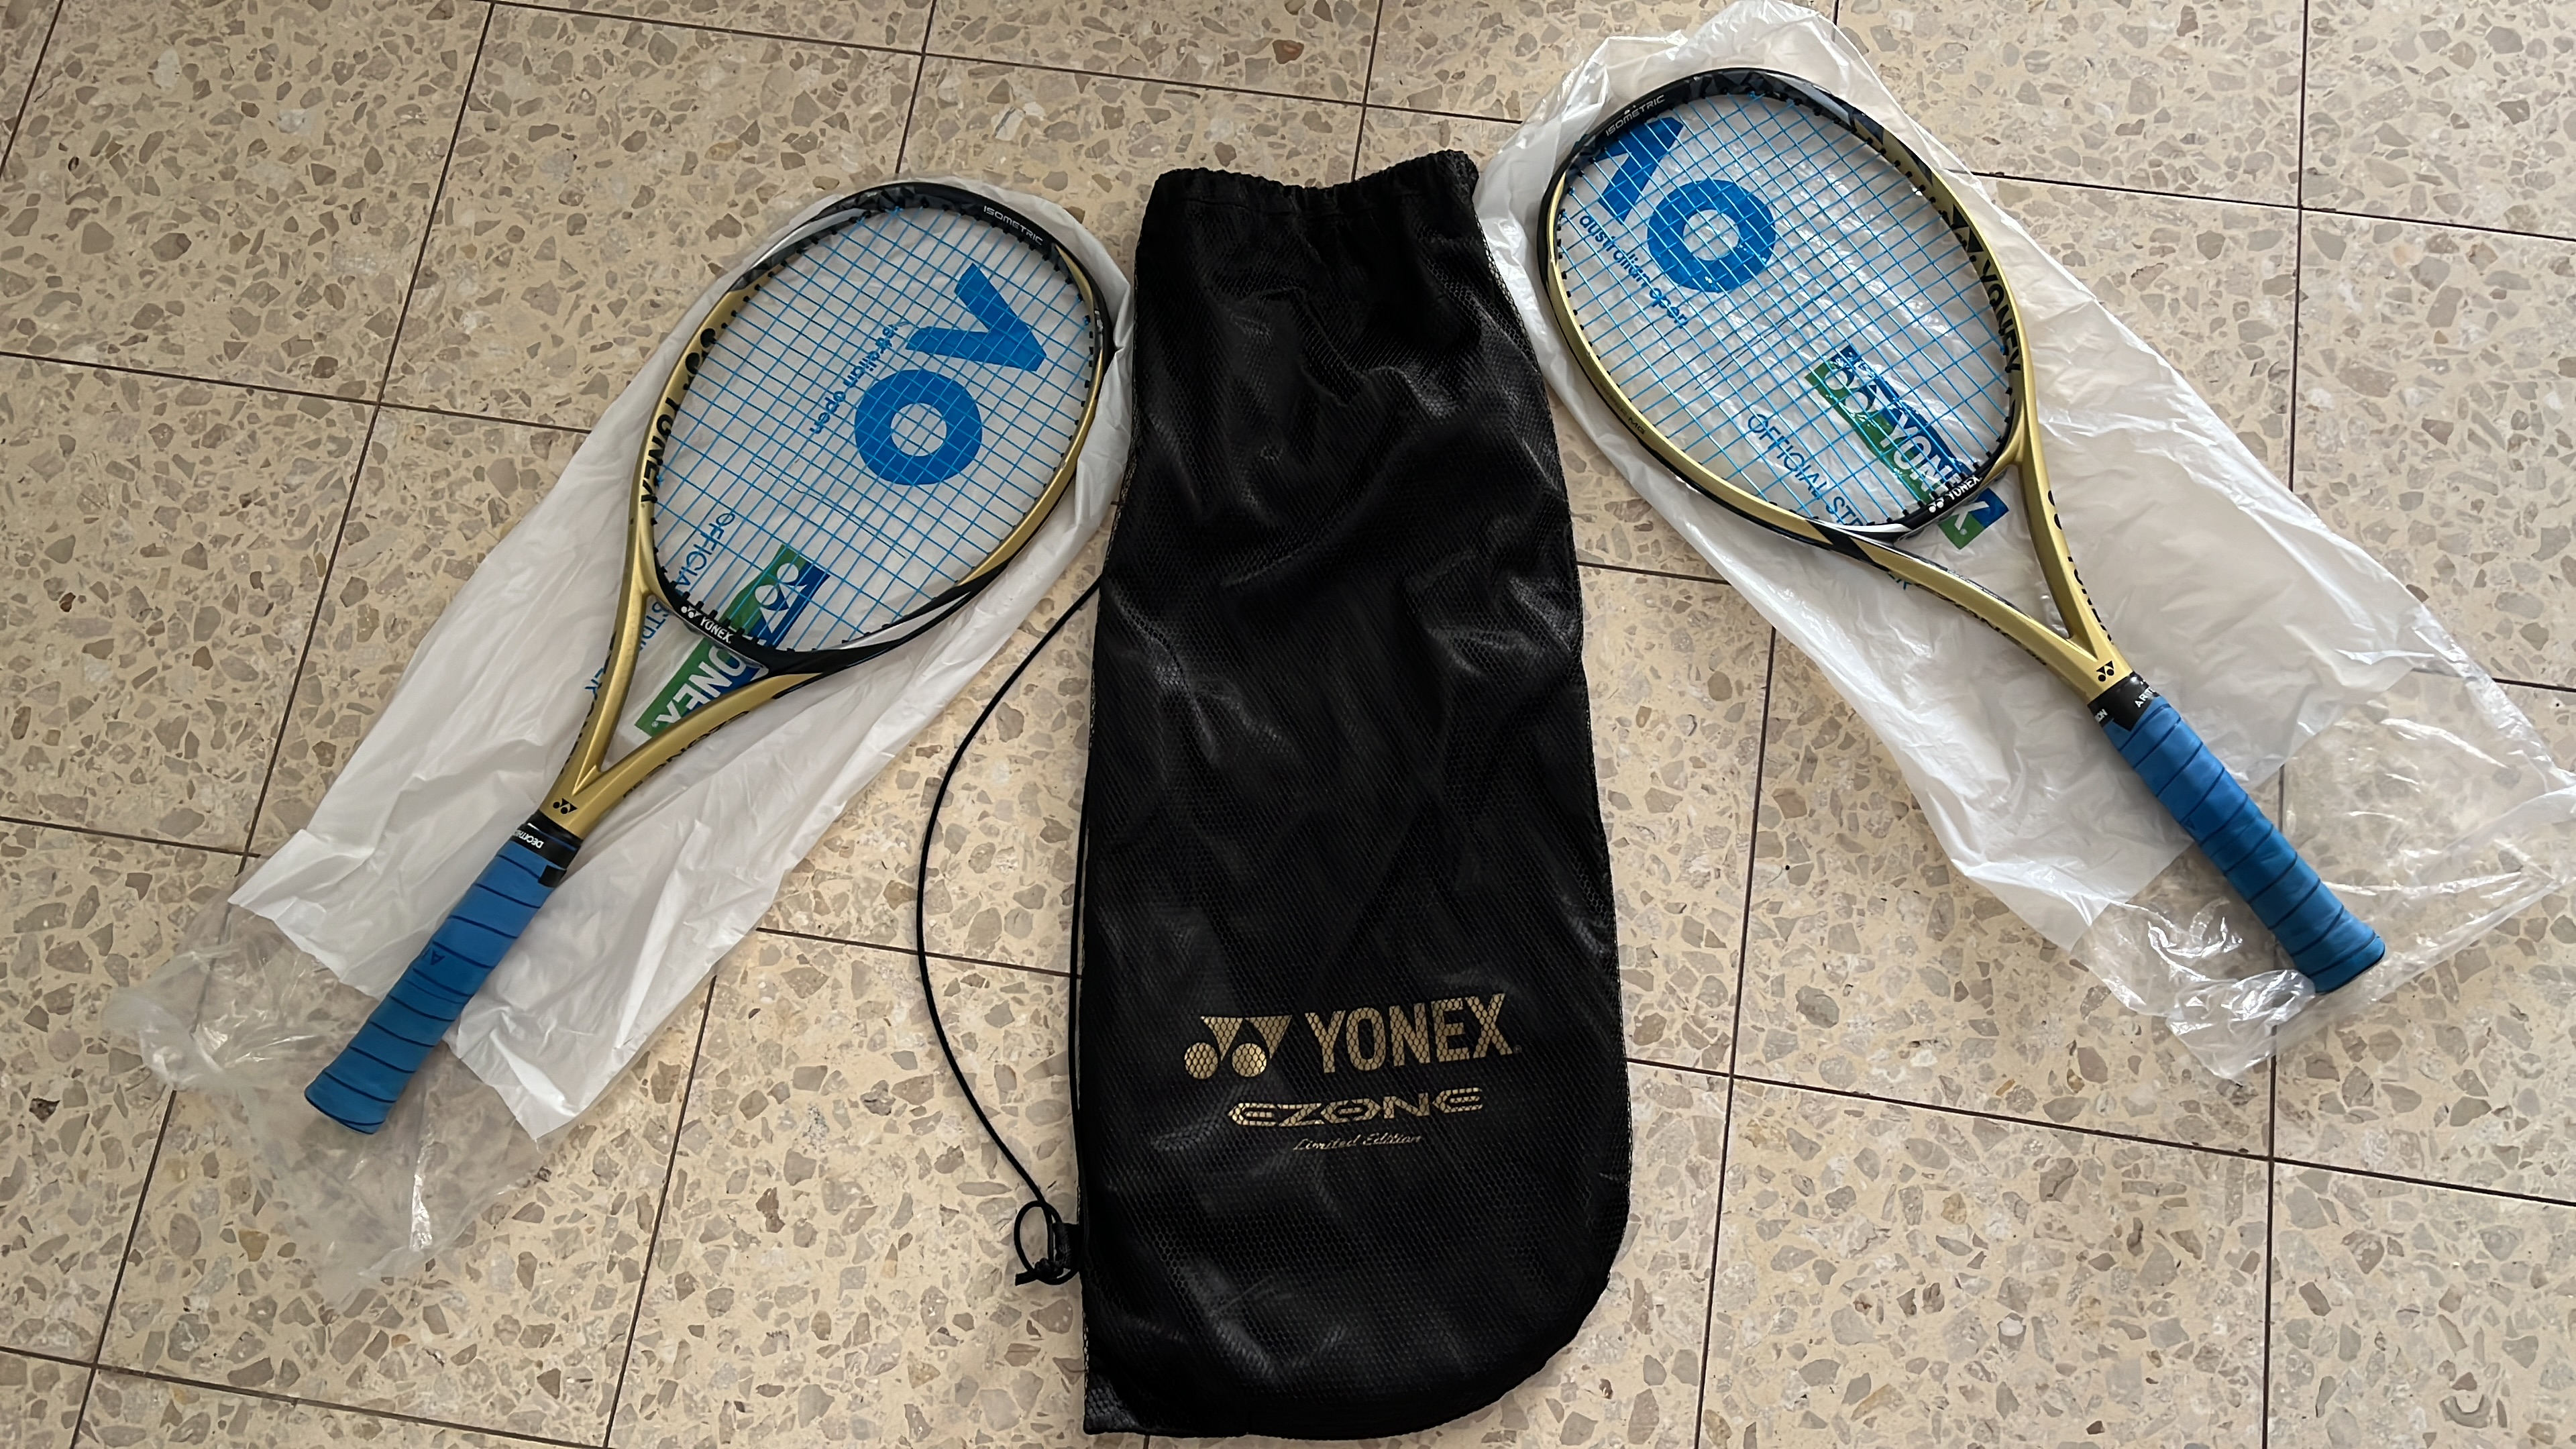 תמונה 1 ,שני מחבטי יונקס אי זון 98 למכירה בבנימינה-גבעת עדה ציוד ספורט  מחבטי טניס